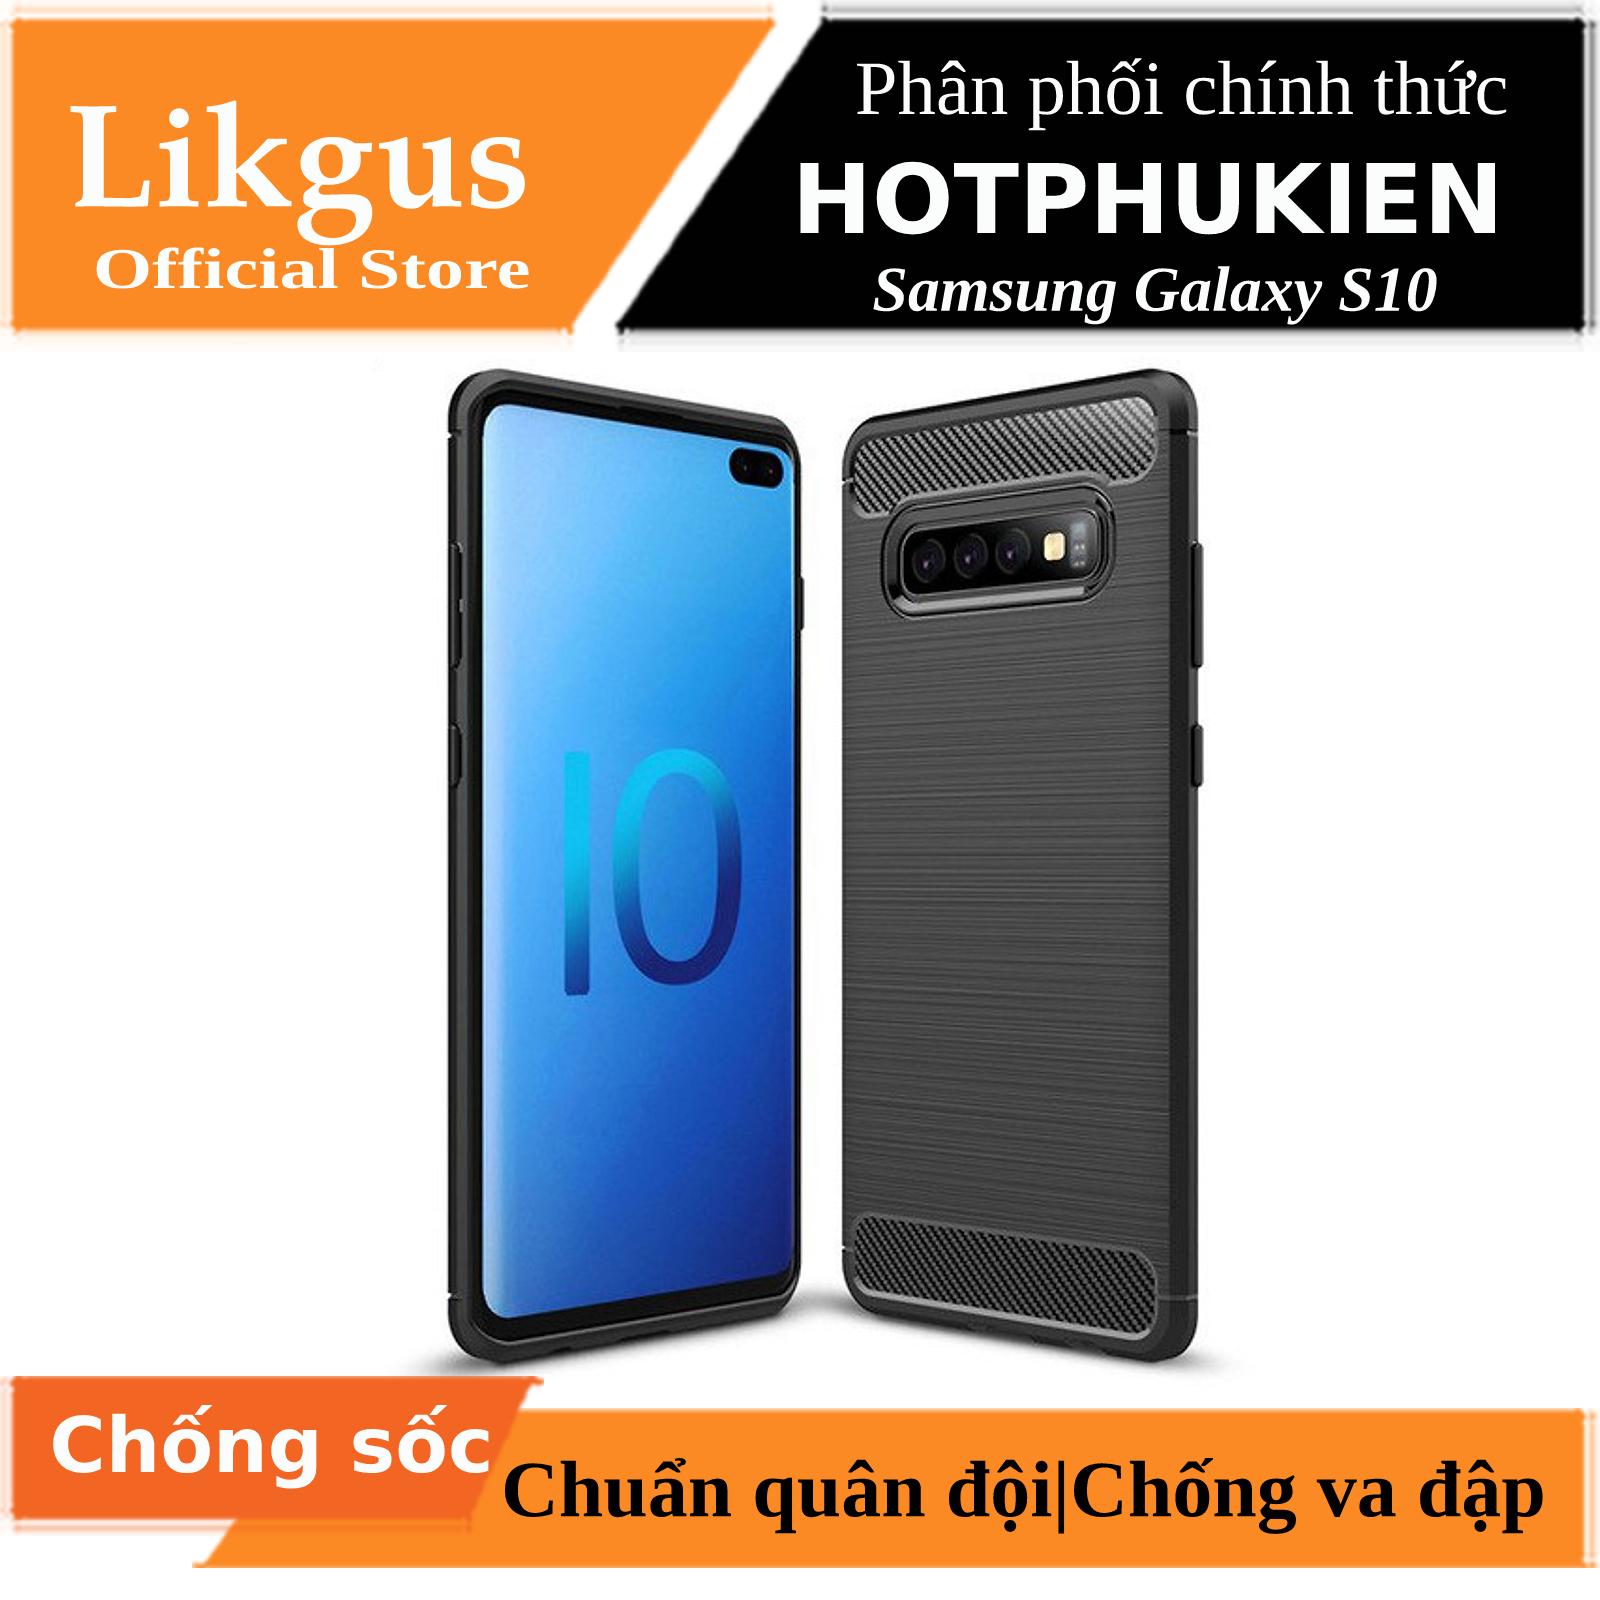 Ốp lưng chống sốc vân kim loại cho Samsung Galaxy S10 hiệu Likgus